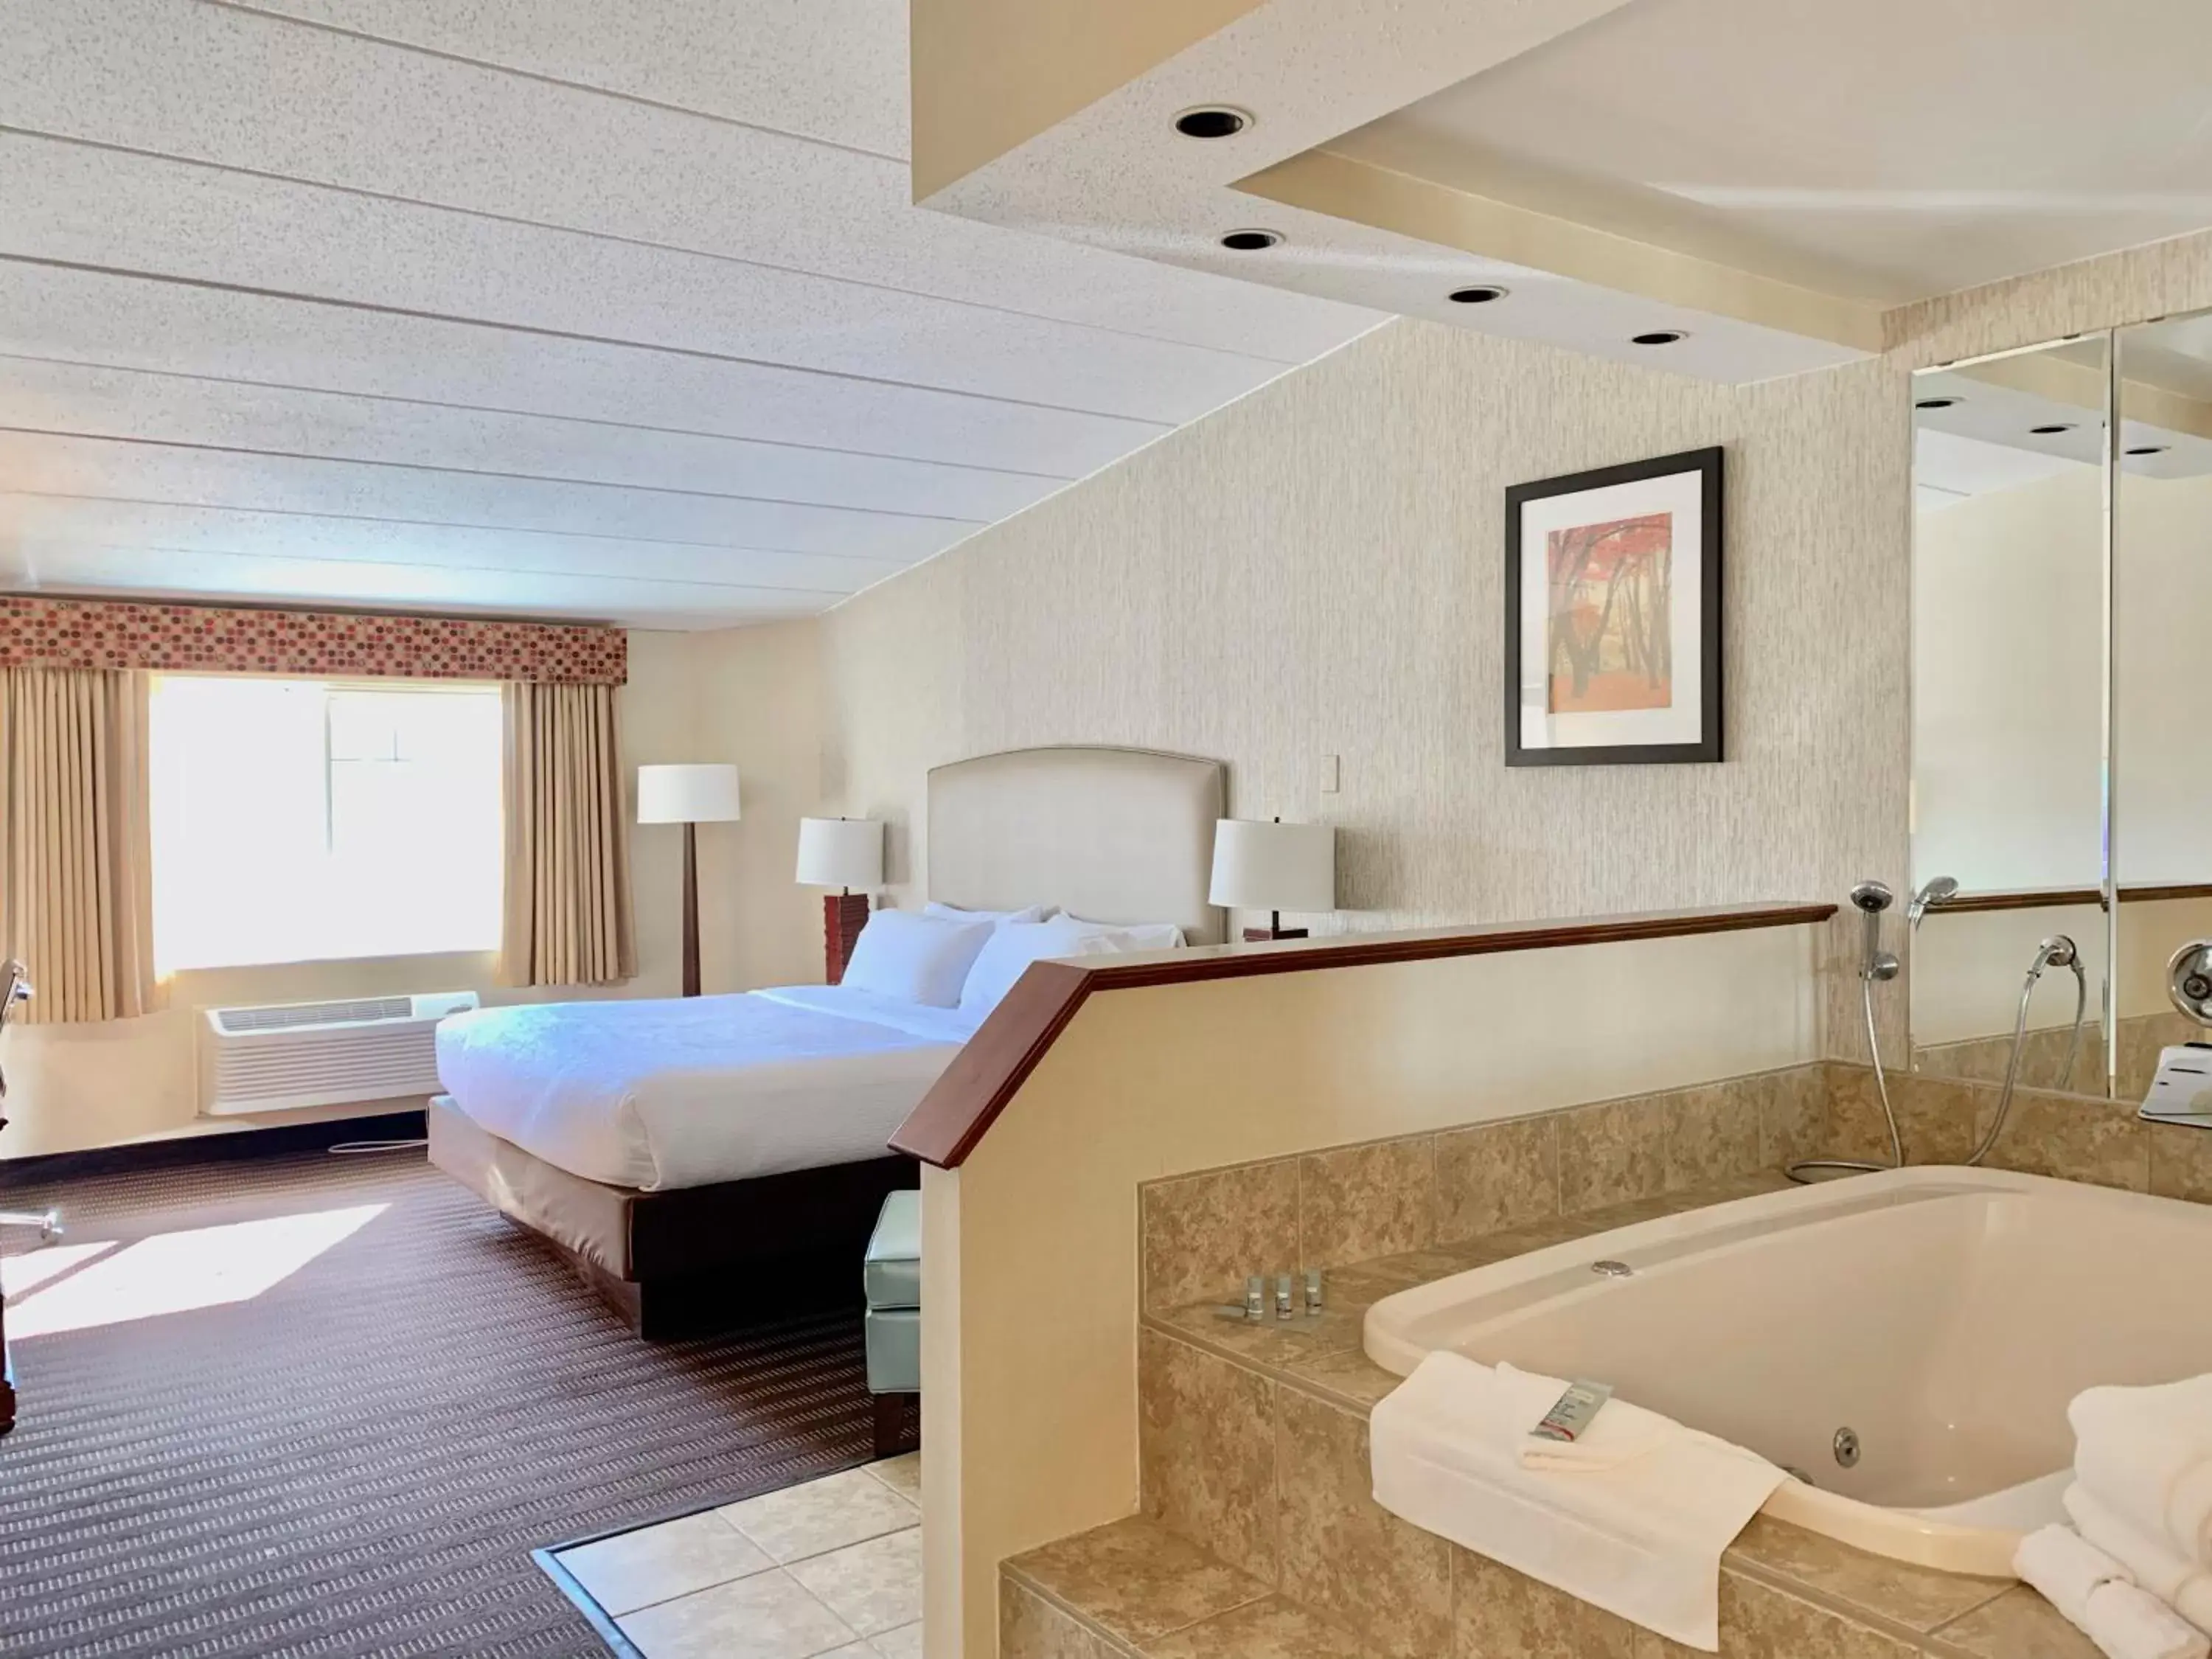 Bedroom, Bathroom in Best Western Springfield Hotel